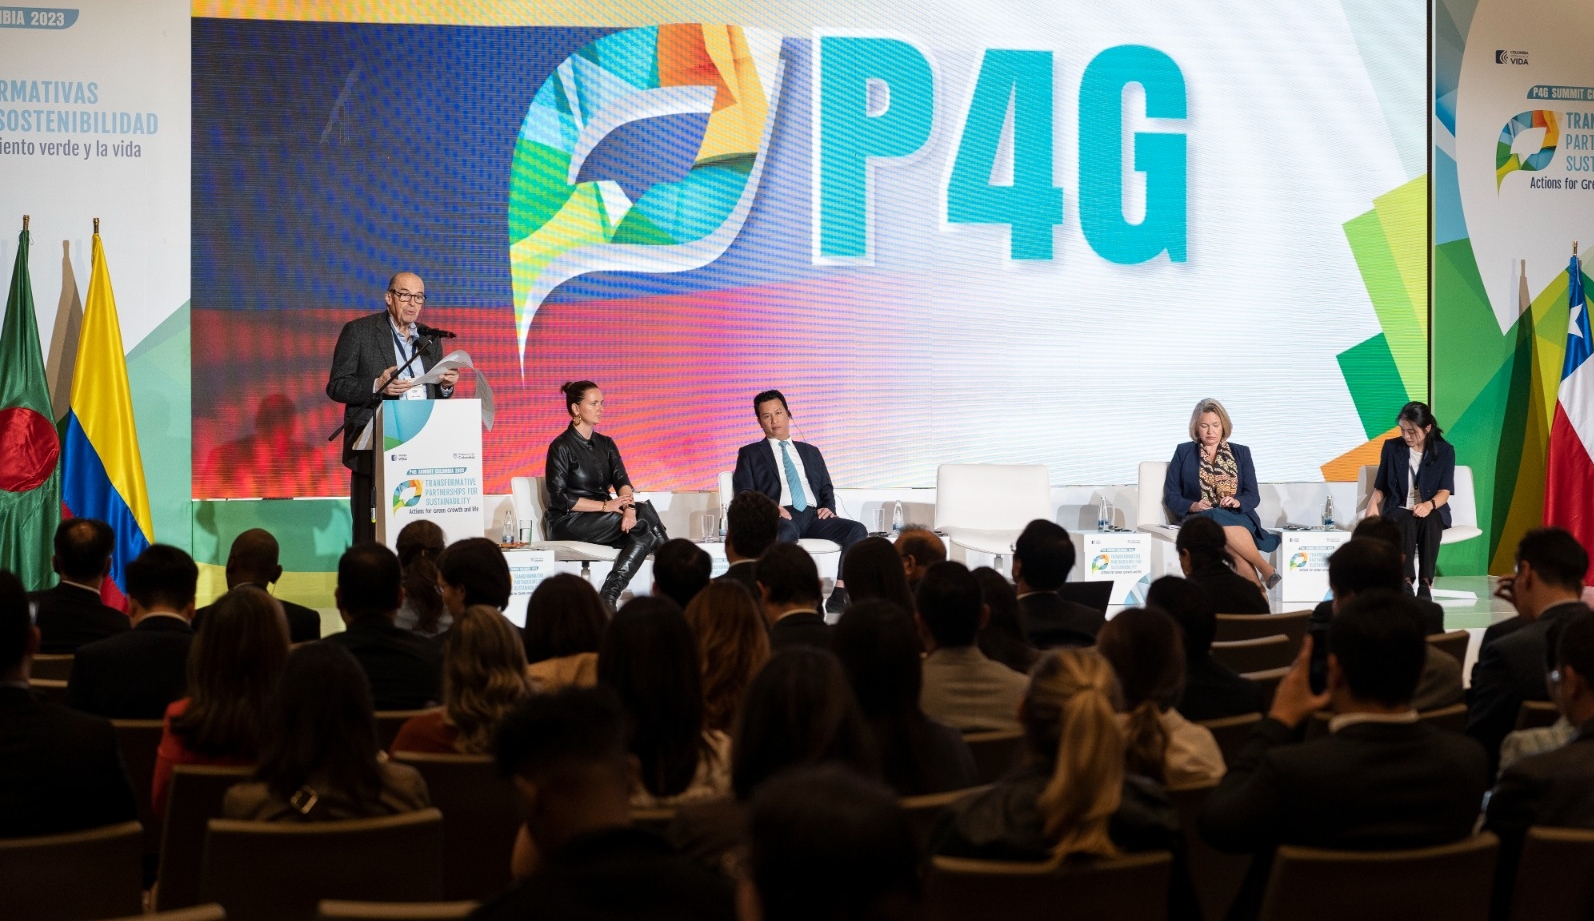 En la clausura de la Cumbre P4G, Canciller Álvaro Leyva invitó a definir acciones concretas y alcanzar compromisos tangibles en favor del Desarrollo Sostenible de la humanidad